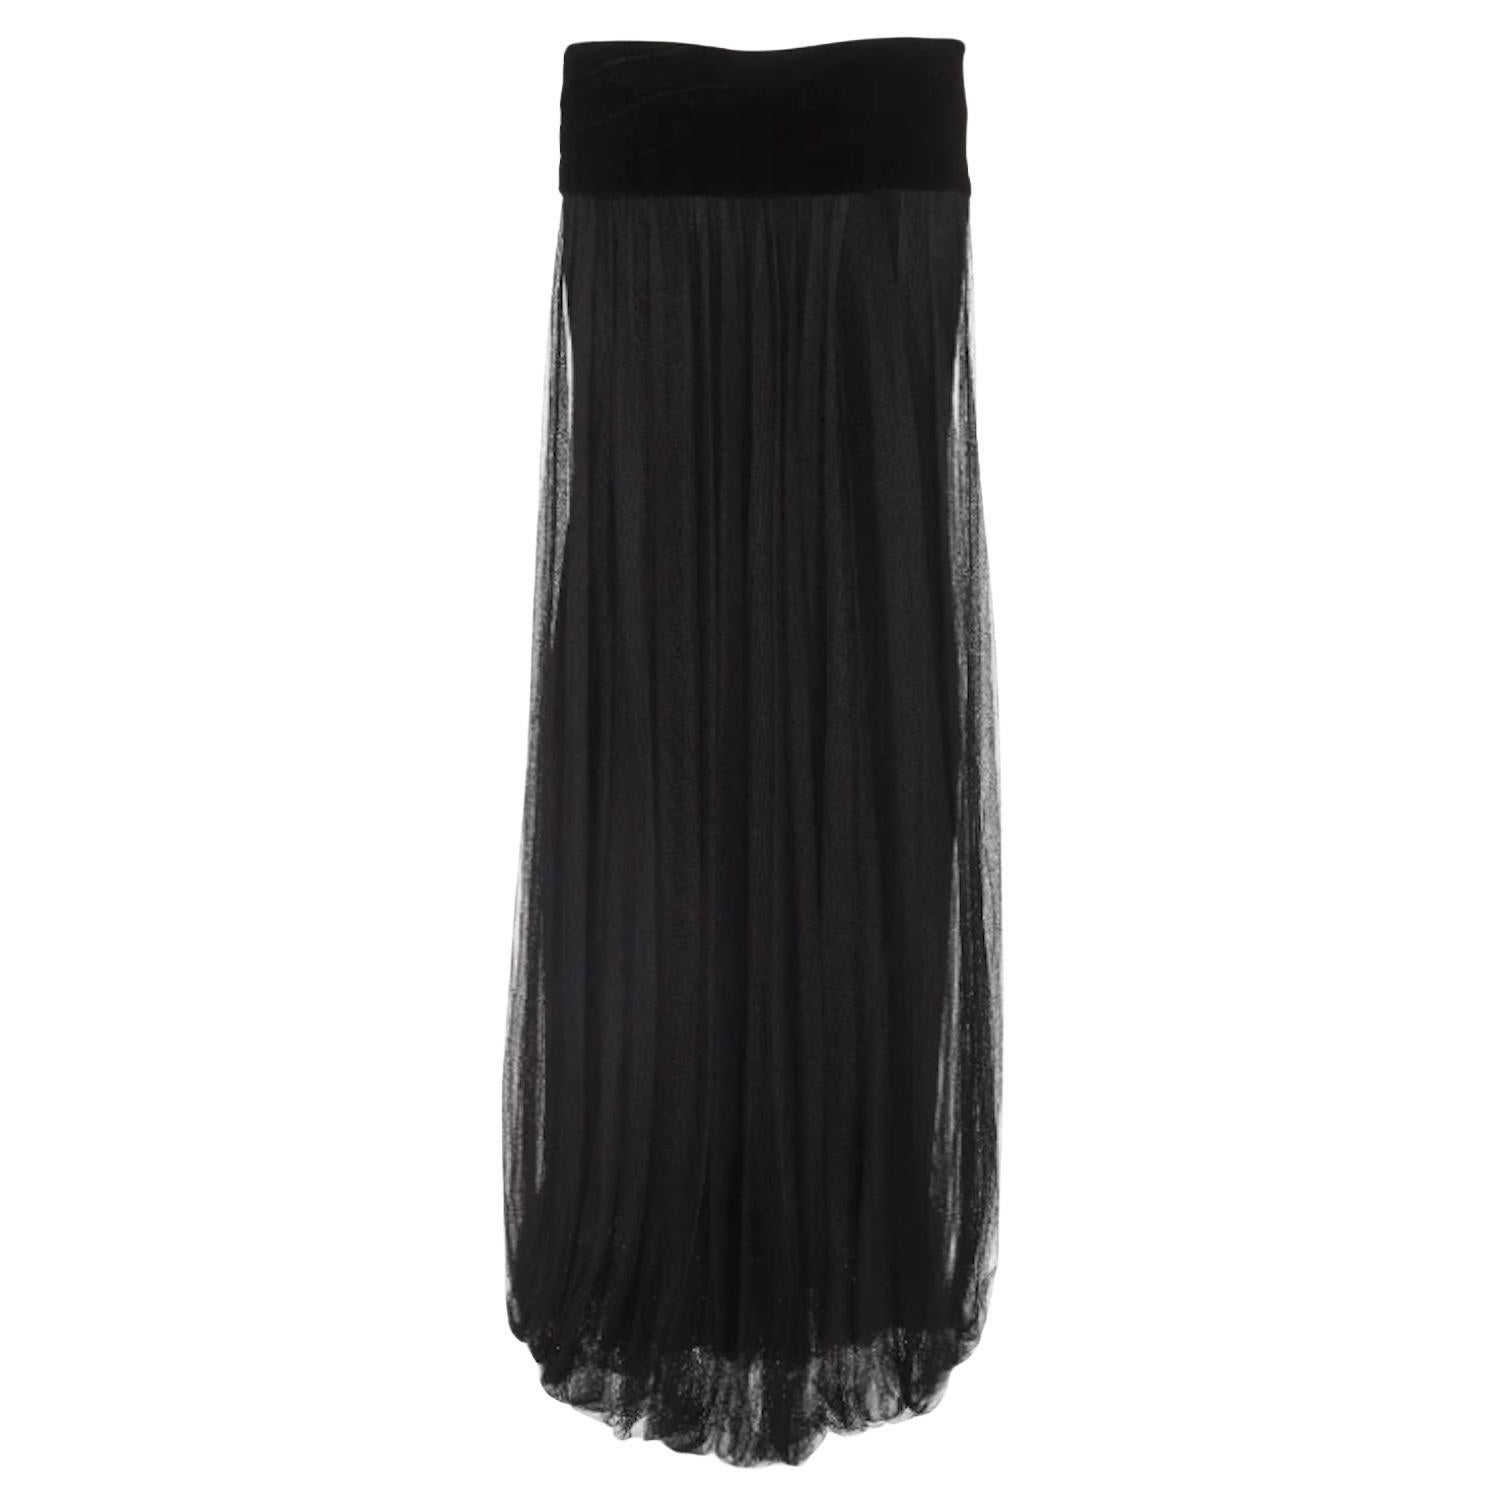 Jean Paul Gaultier Black Tulle Skirt/Dress with Velvet Details For Sale